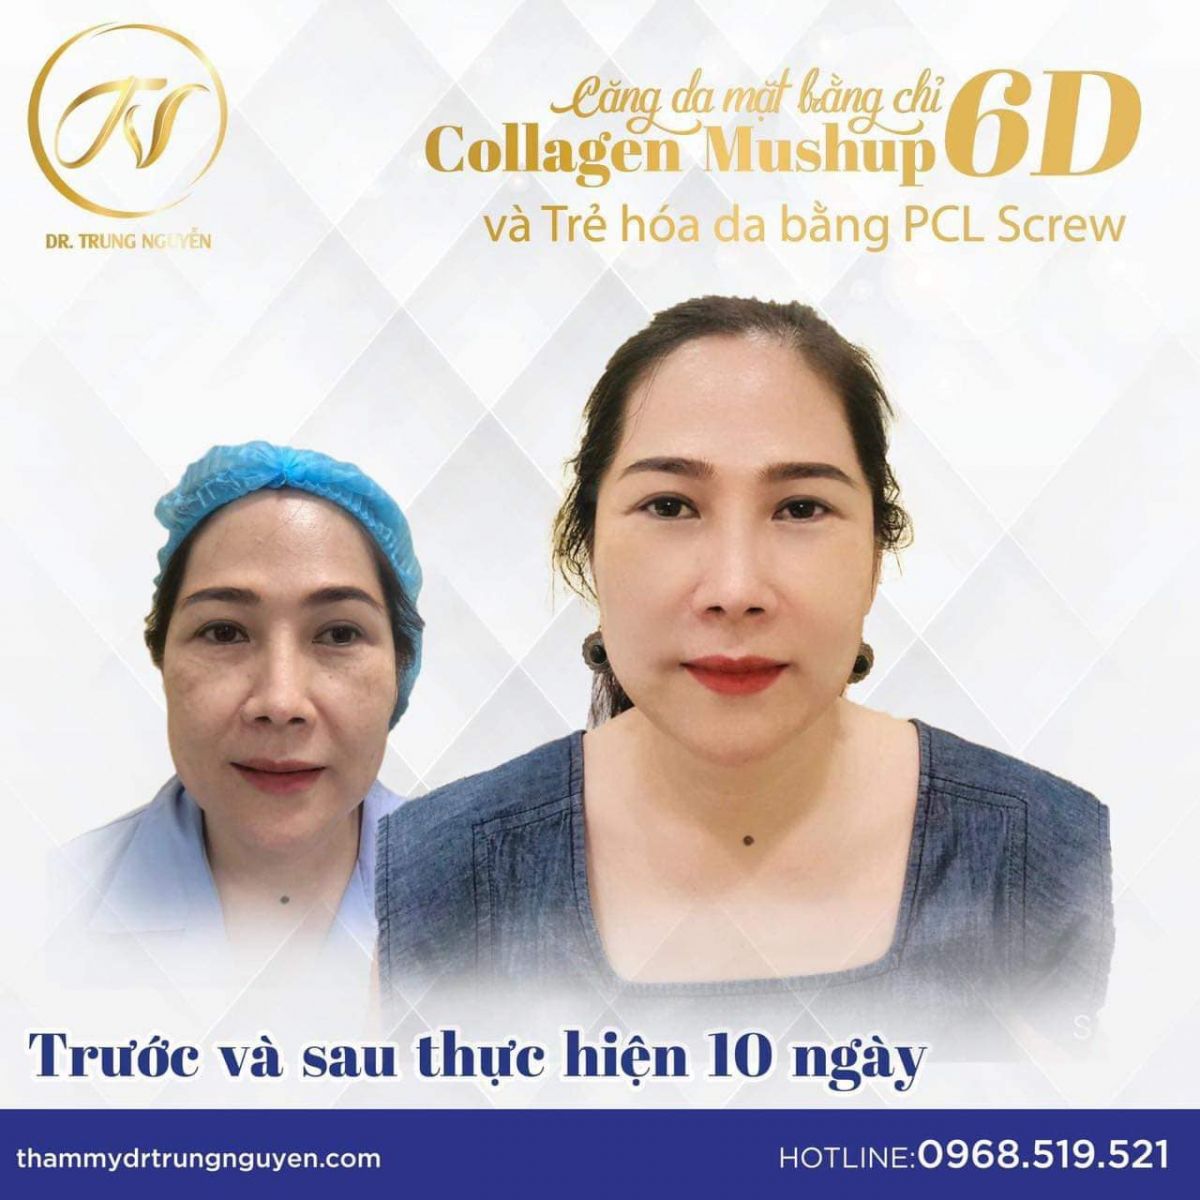 Trẻ hóa làn da cùng phương pháp PCL Screw và căng da mặt bằng chỉ Collagen Mush up 6D